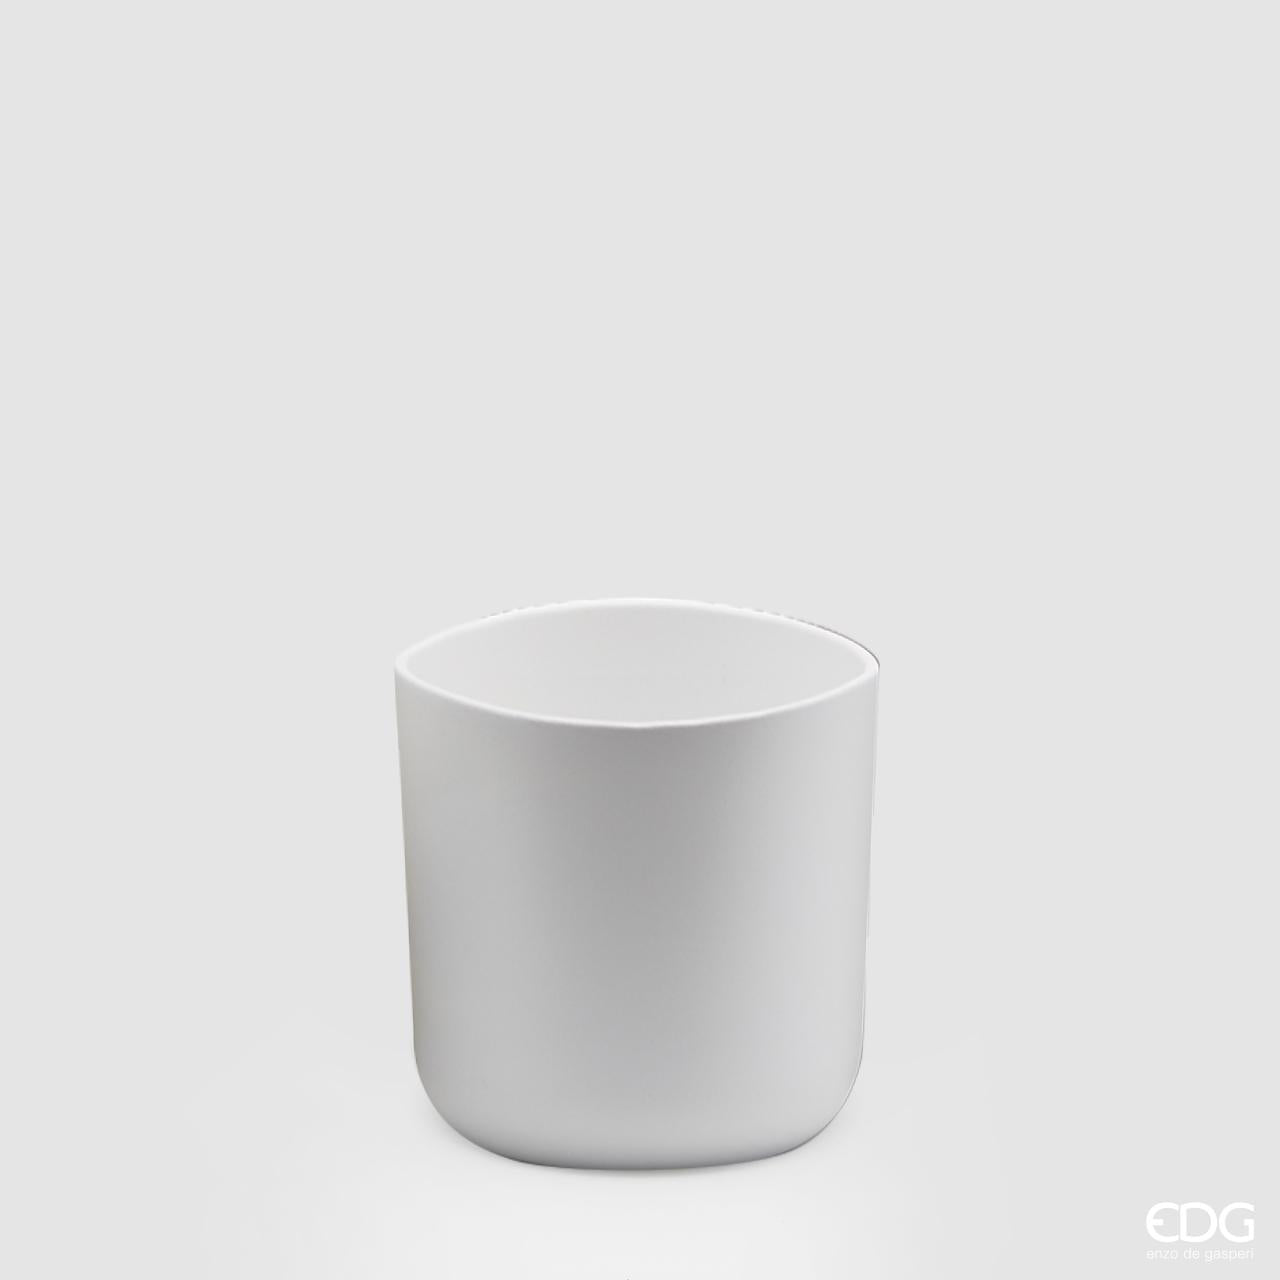 Vaso in ceramica di colore bianco. Dimensioni: cm 10 x 10 h. Selezione di prodotti EDG in negozio e online su tutttochic.it